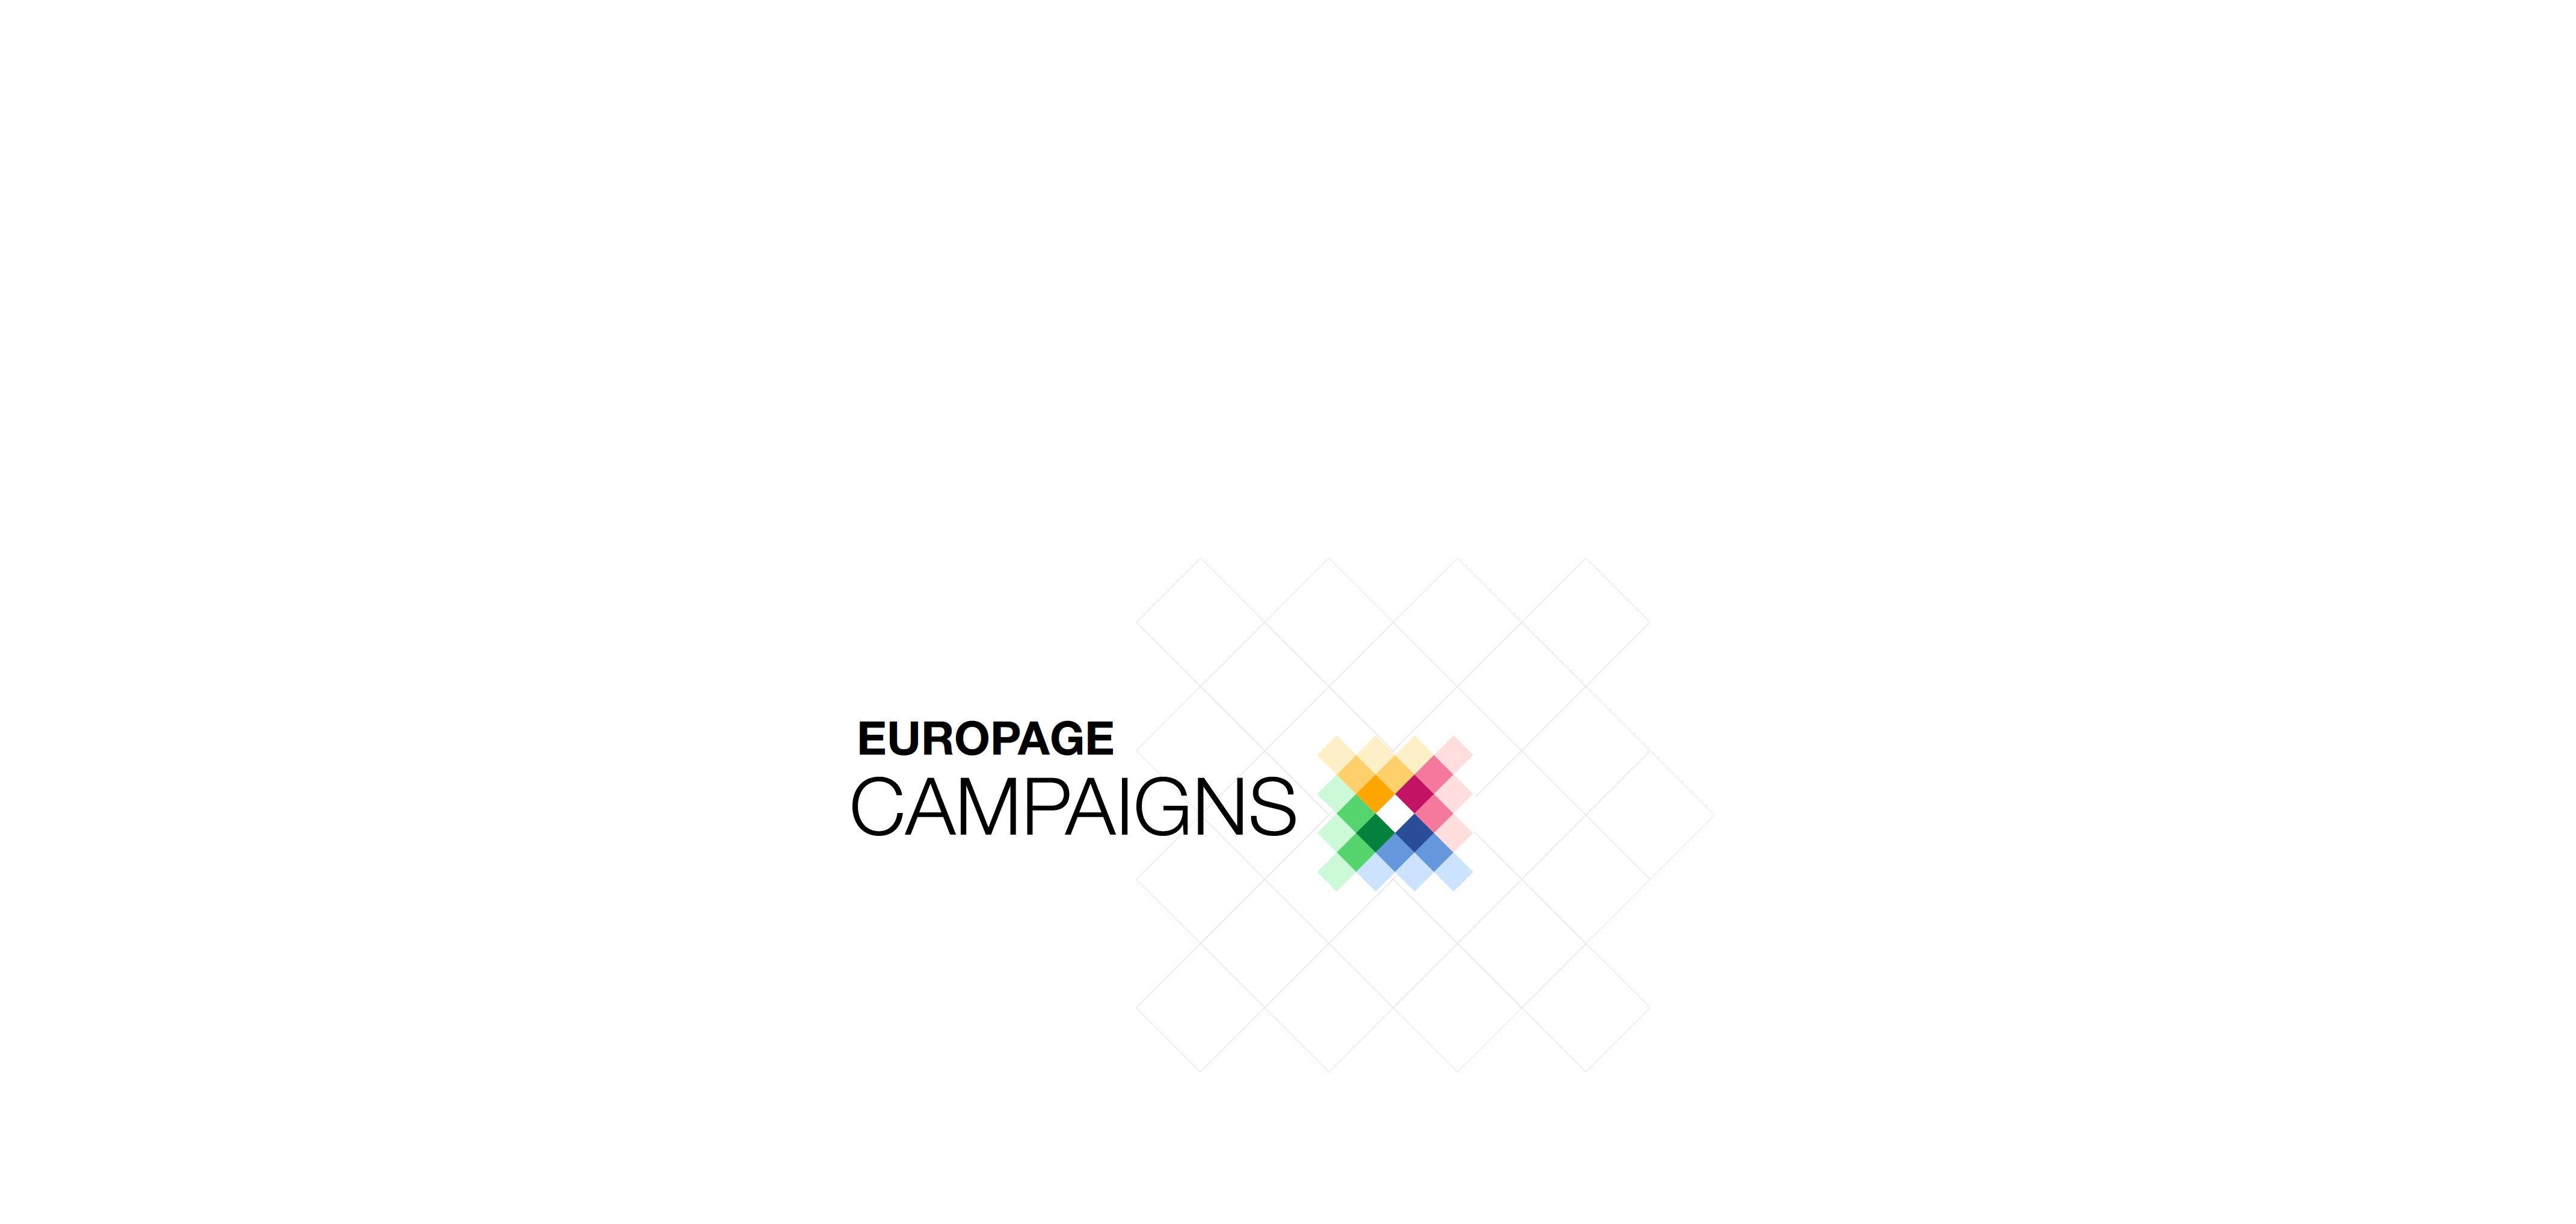 europage campaigns